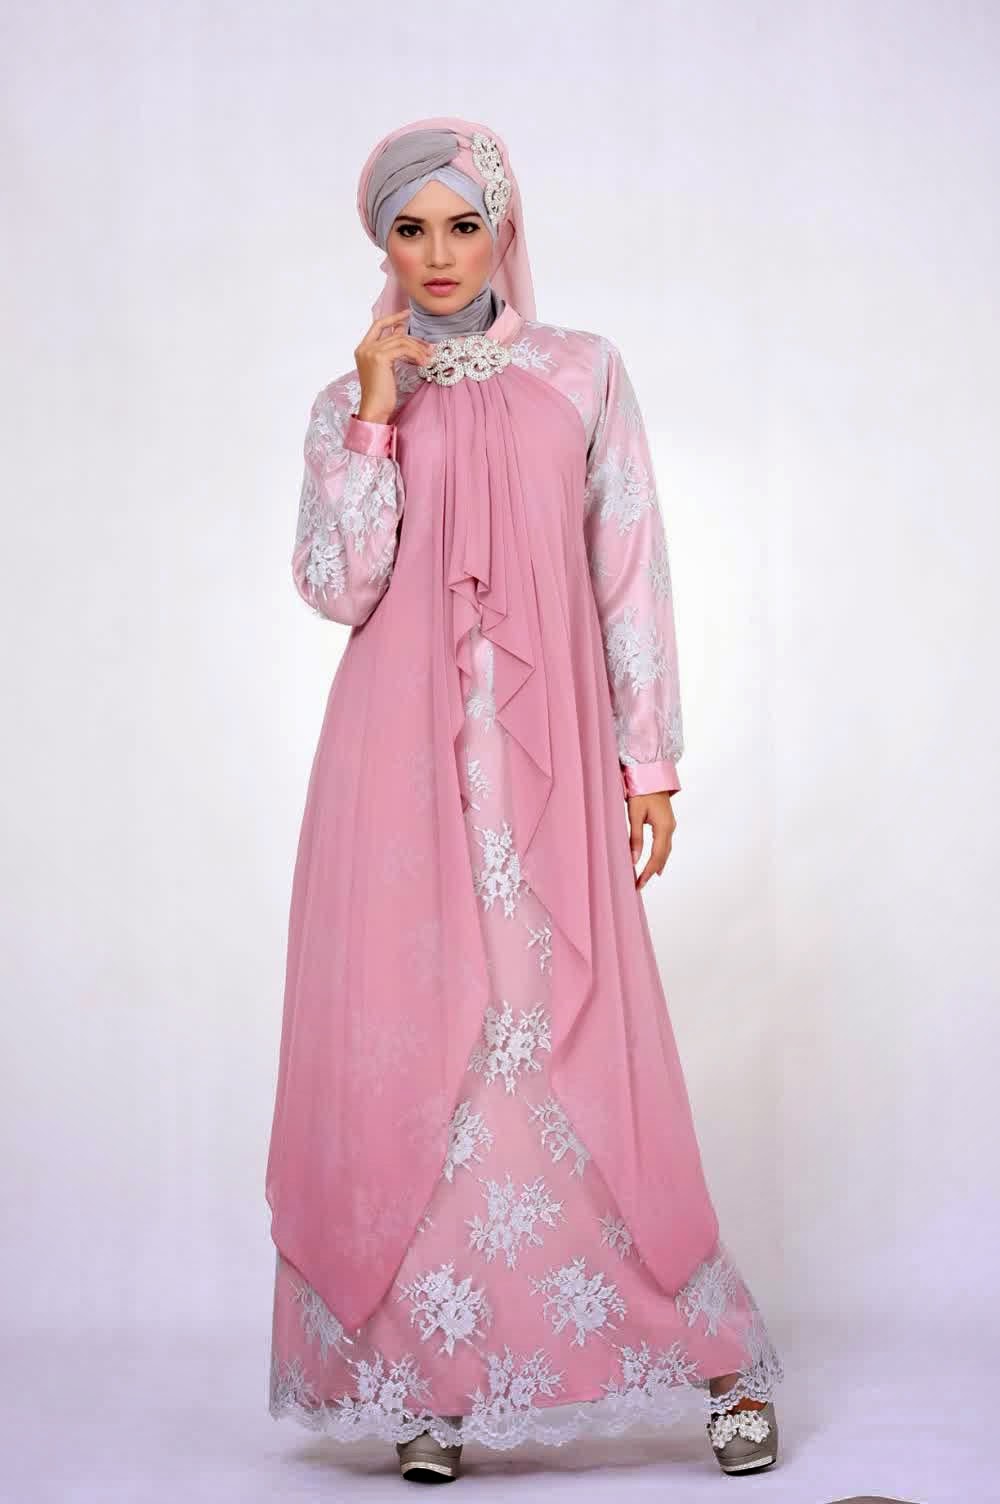 Gambar Model Baju Muslim Brokat Gamis